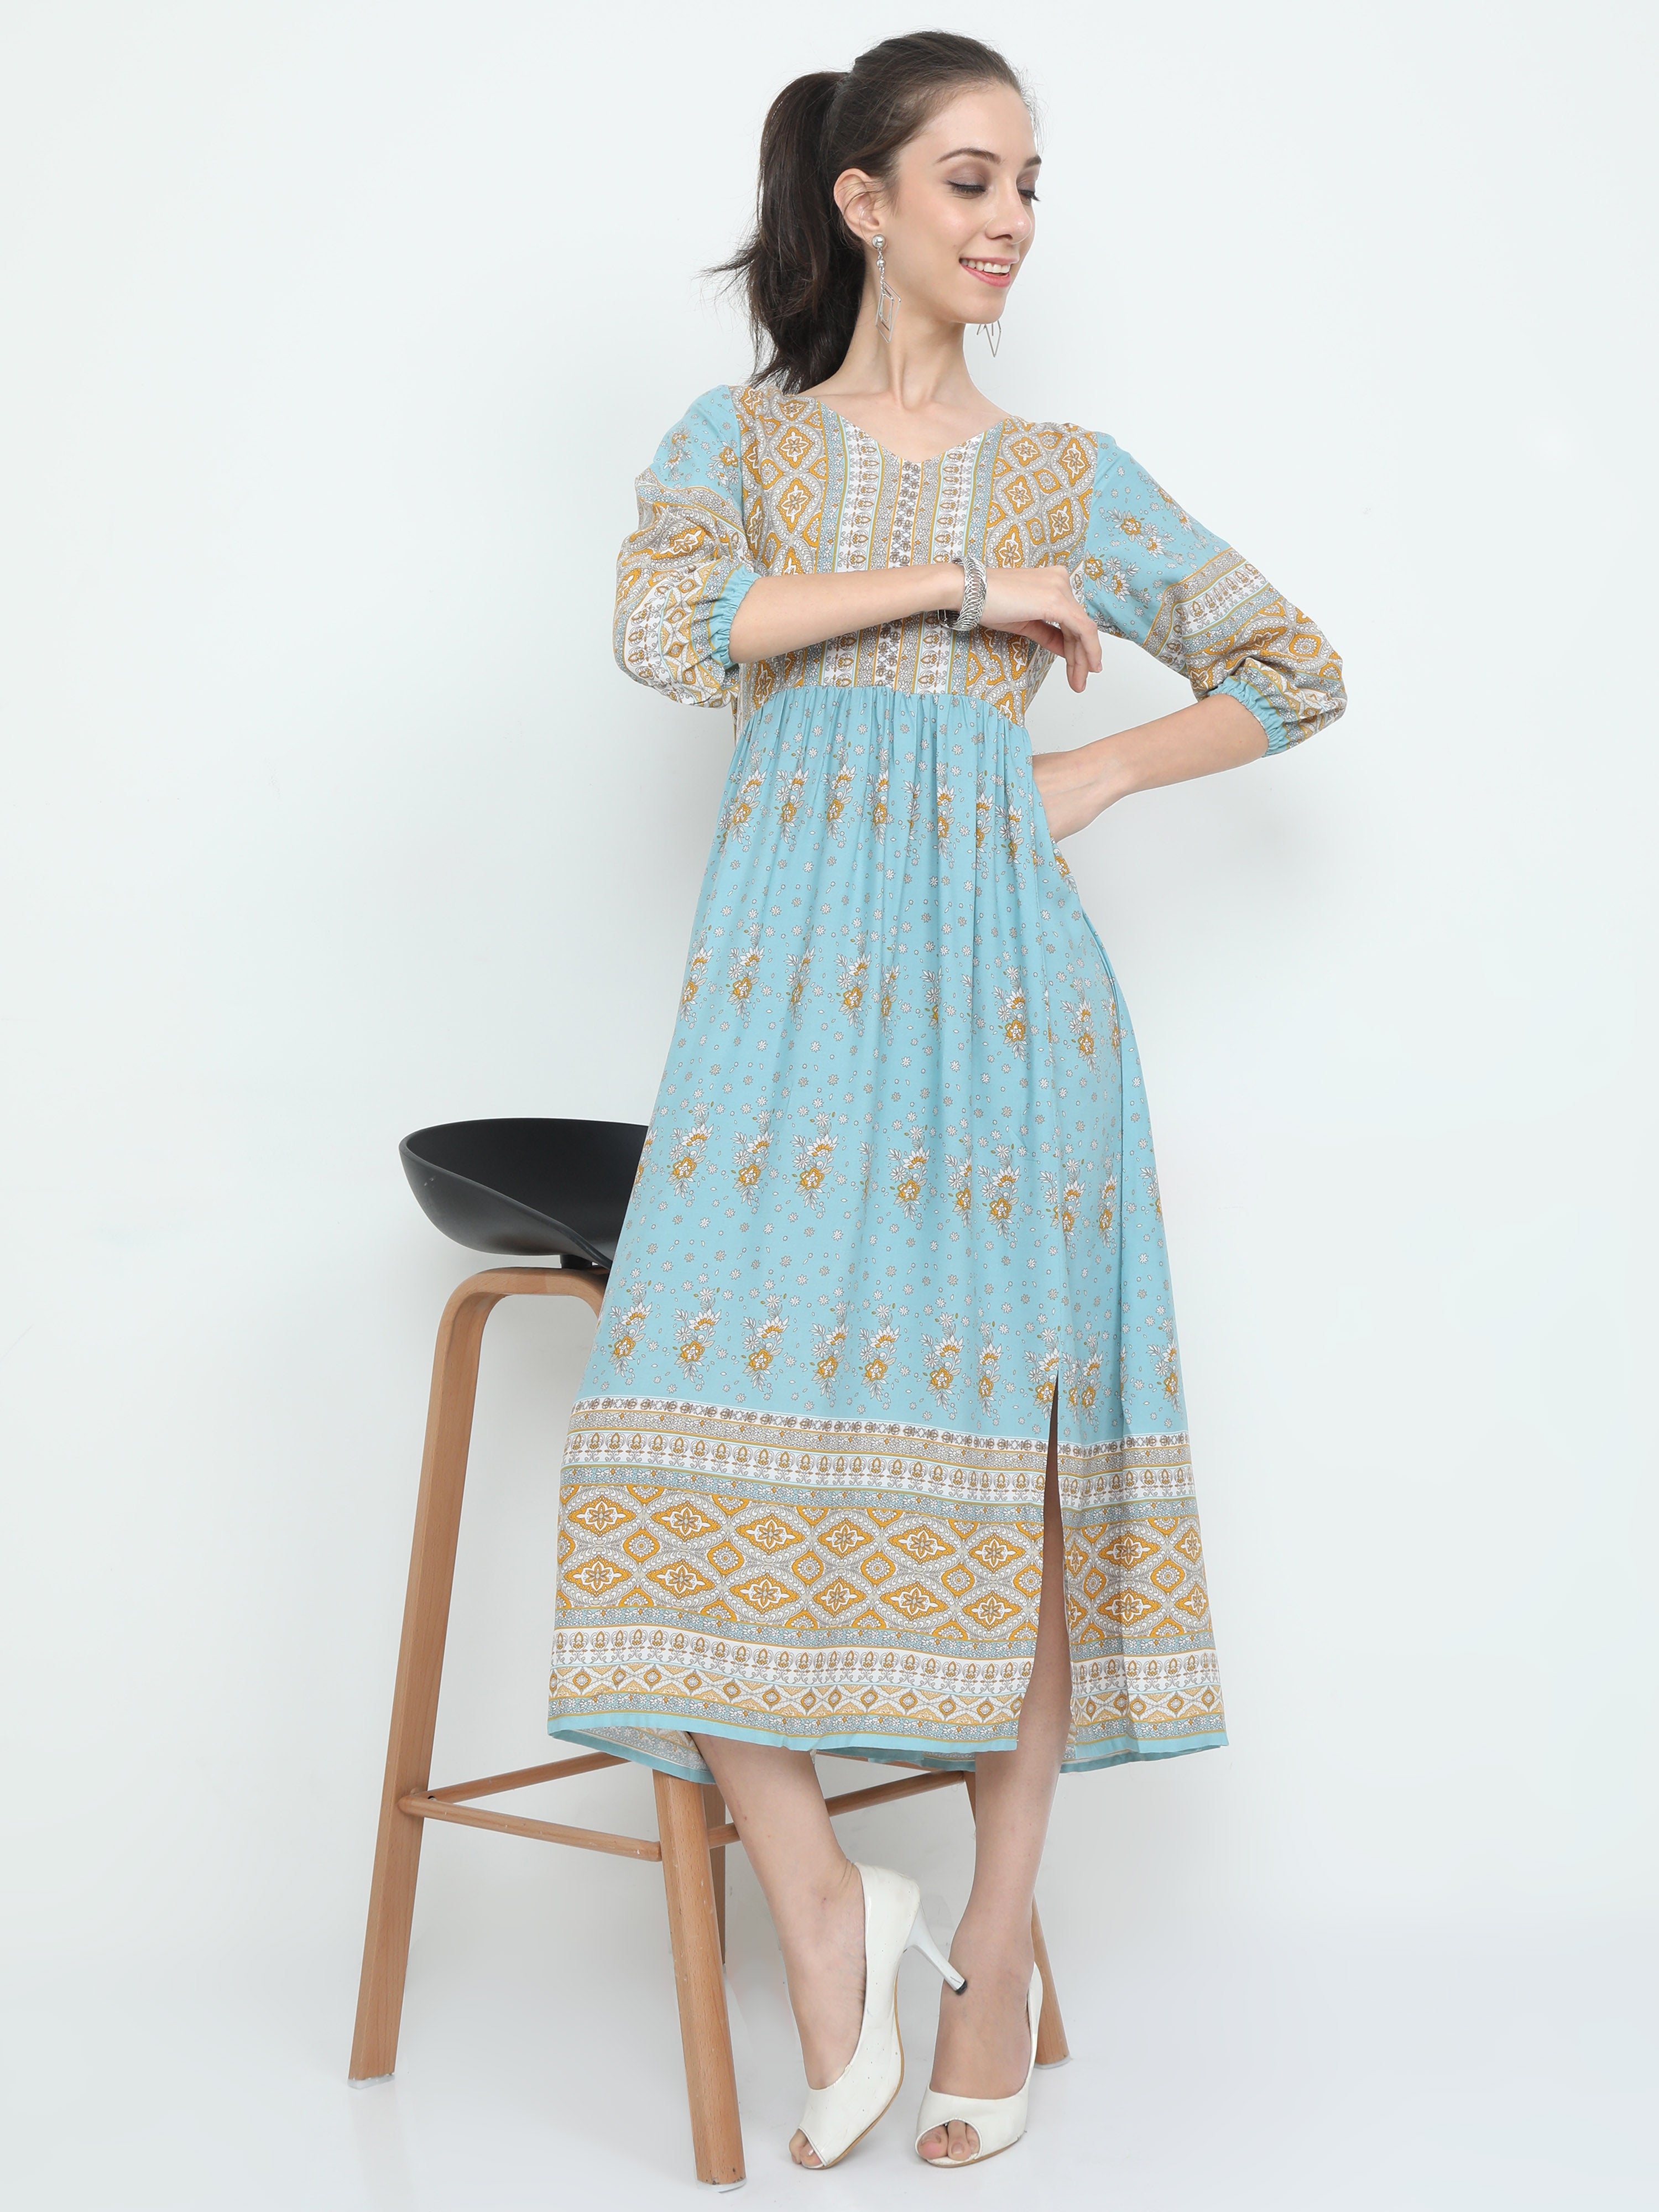 Fashionista - Botanical Printed Maxi Style Elegant Border Dress